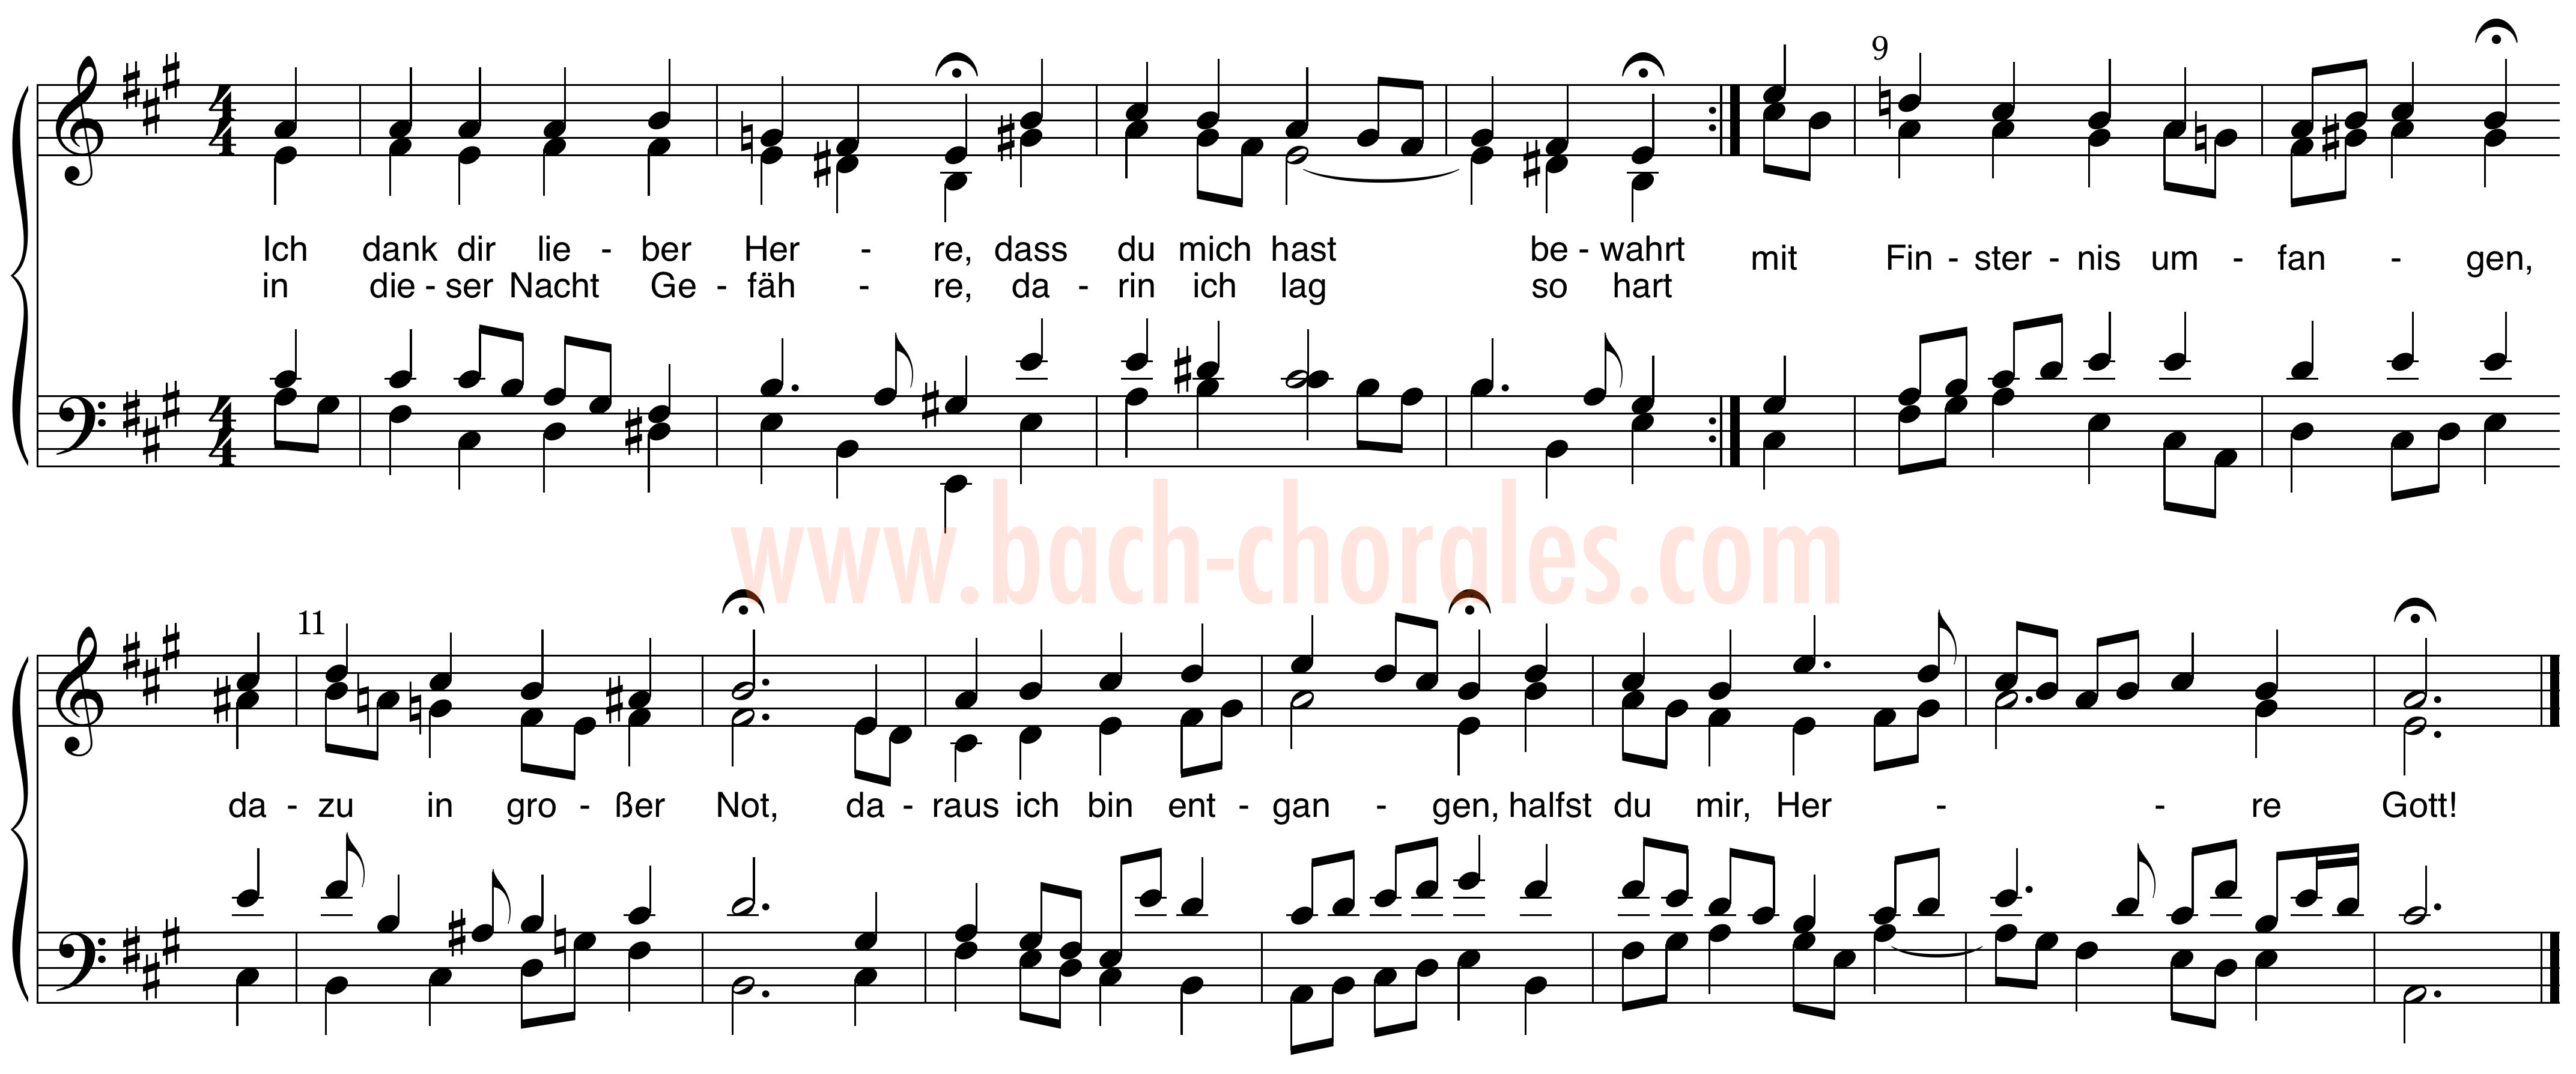 notenbeeld BWV 347 op https://www.bach-chorales.com/